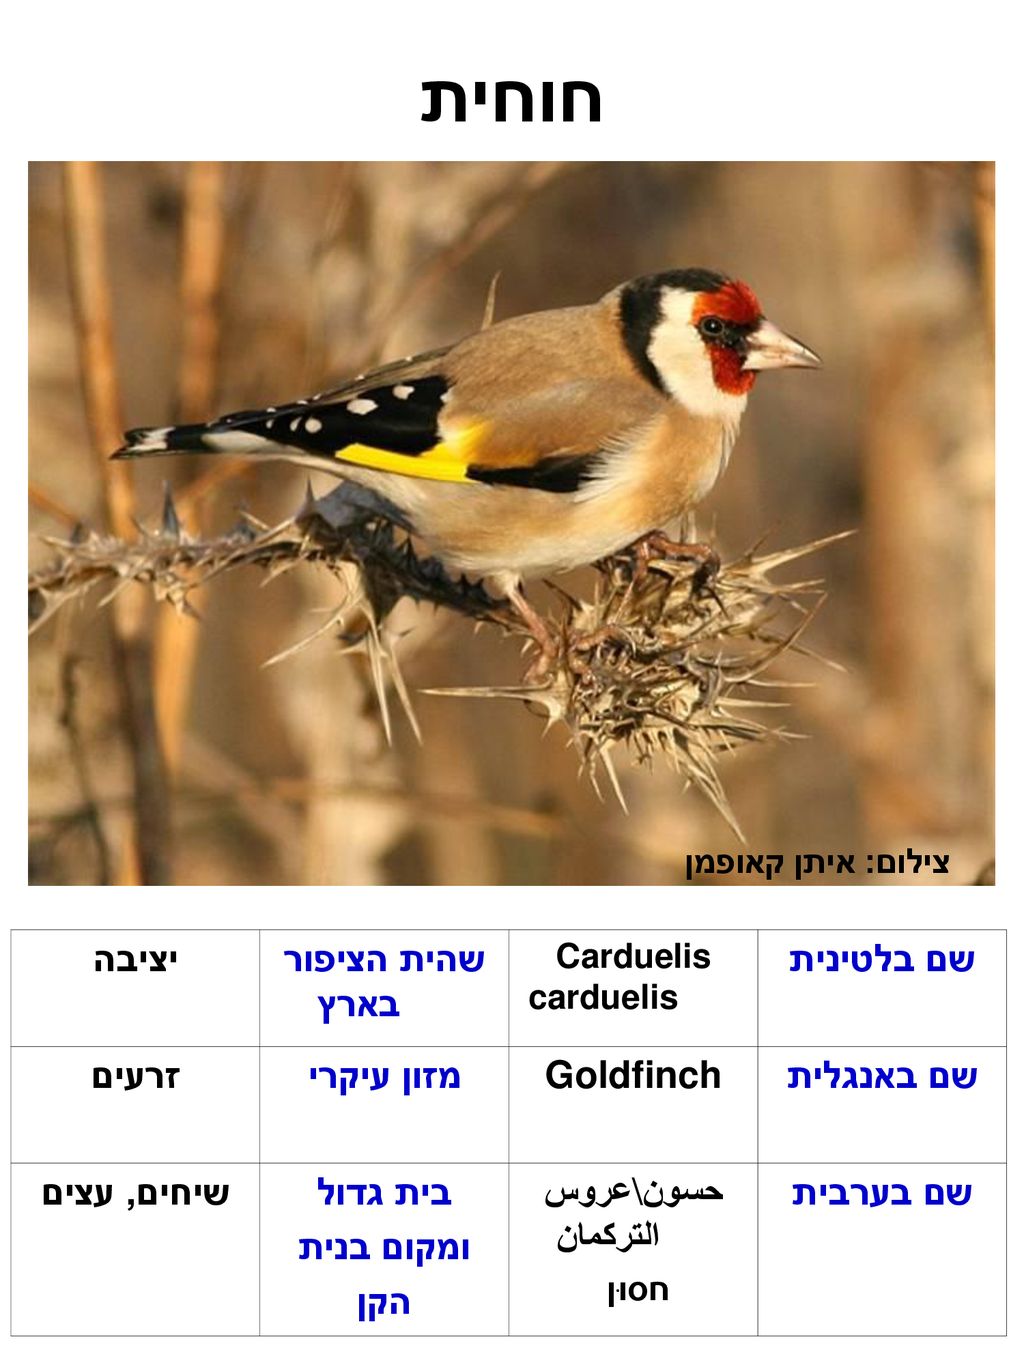 חוחית שם בלטינית שהית הציפור בארץ יציבה שם באנגלית Goldfinch